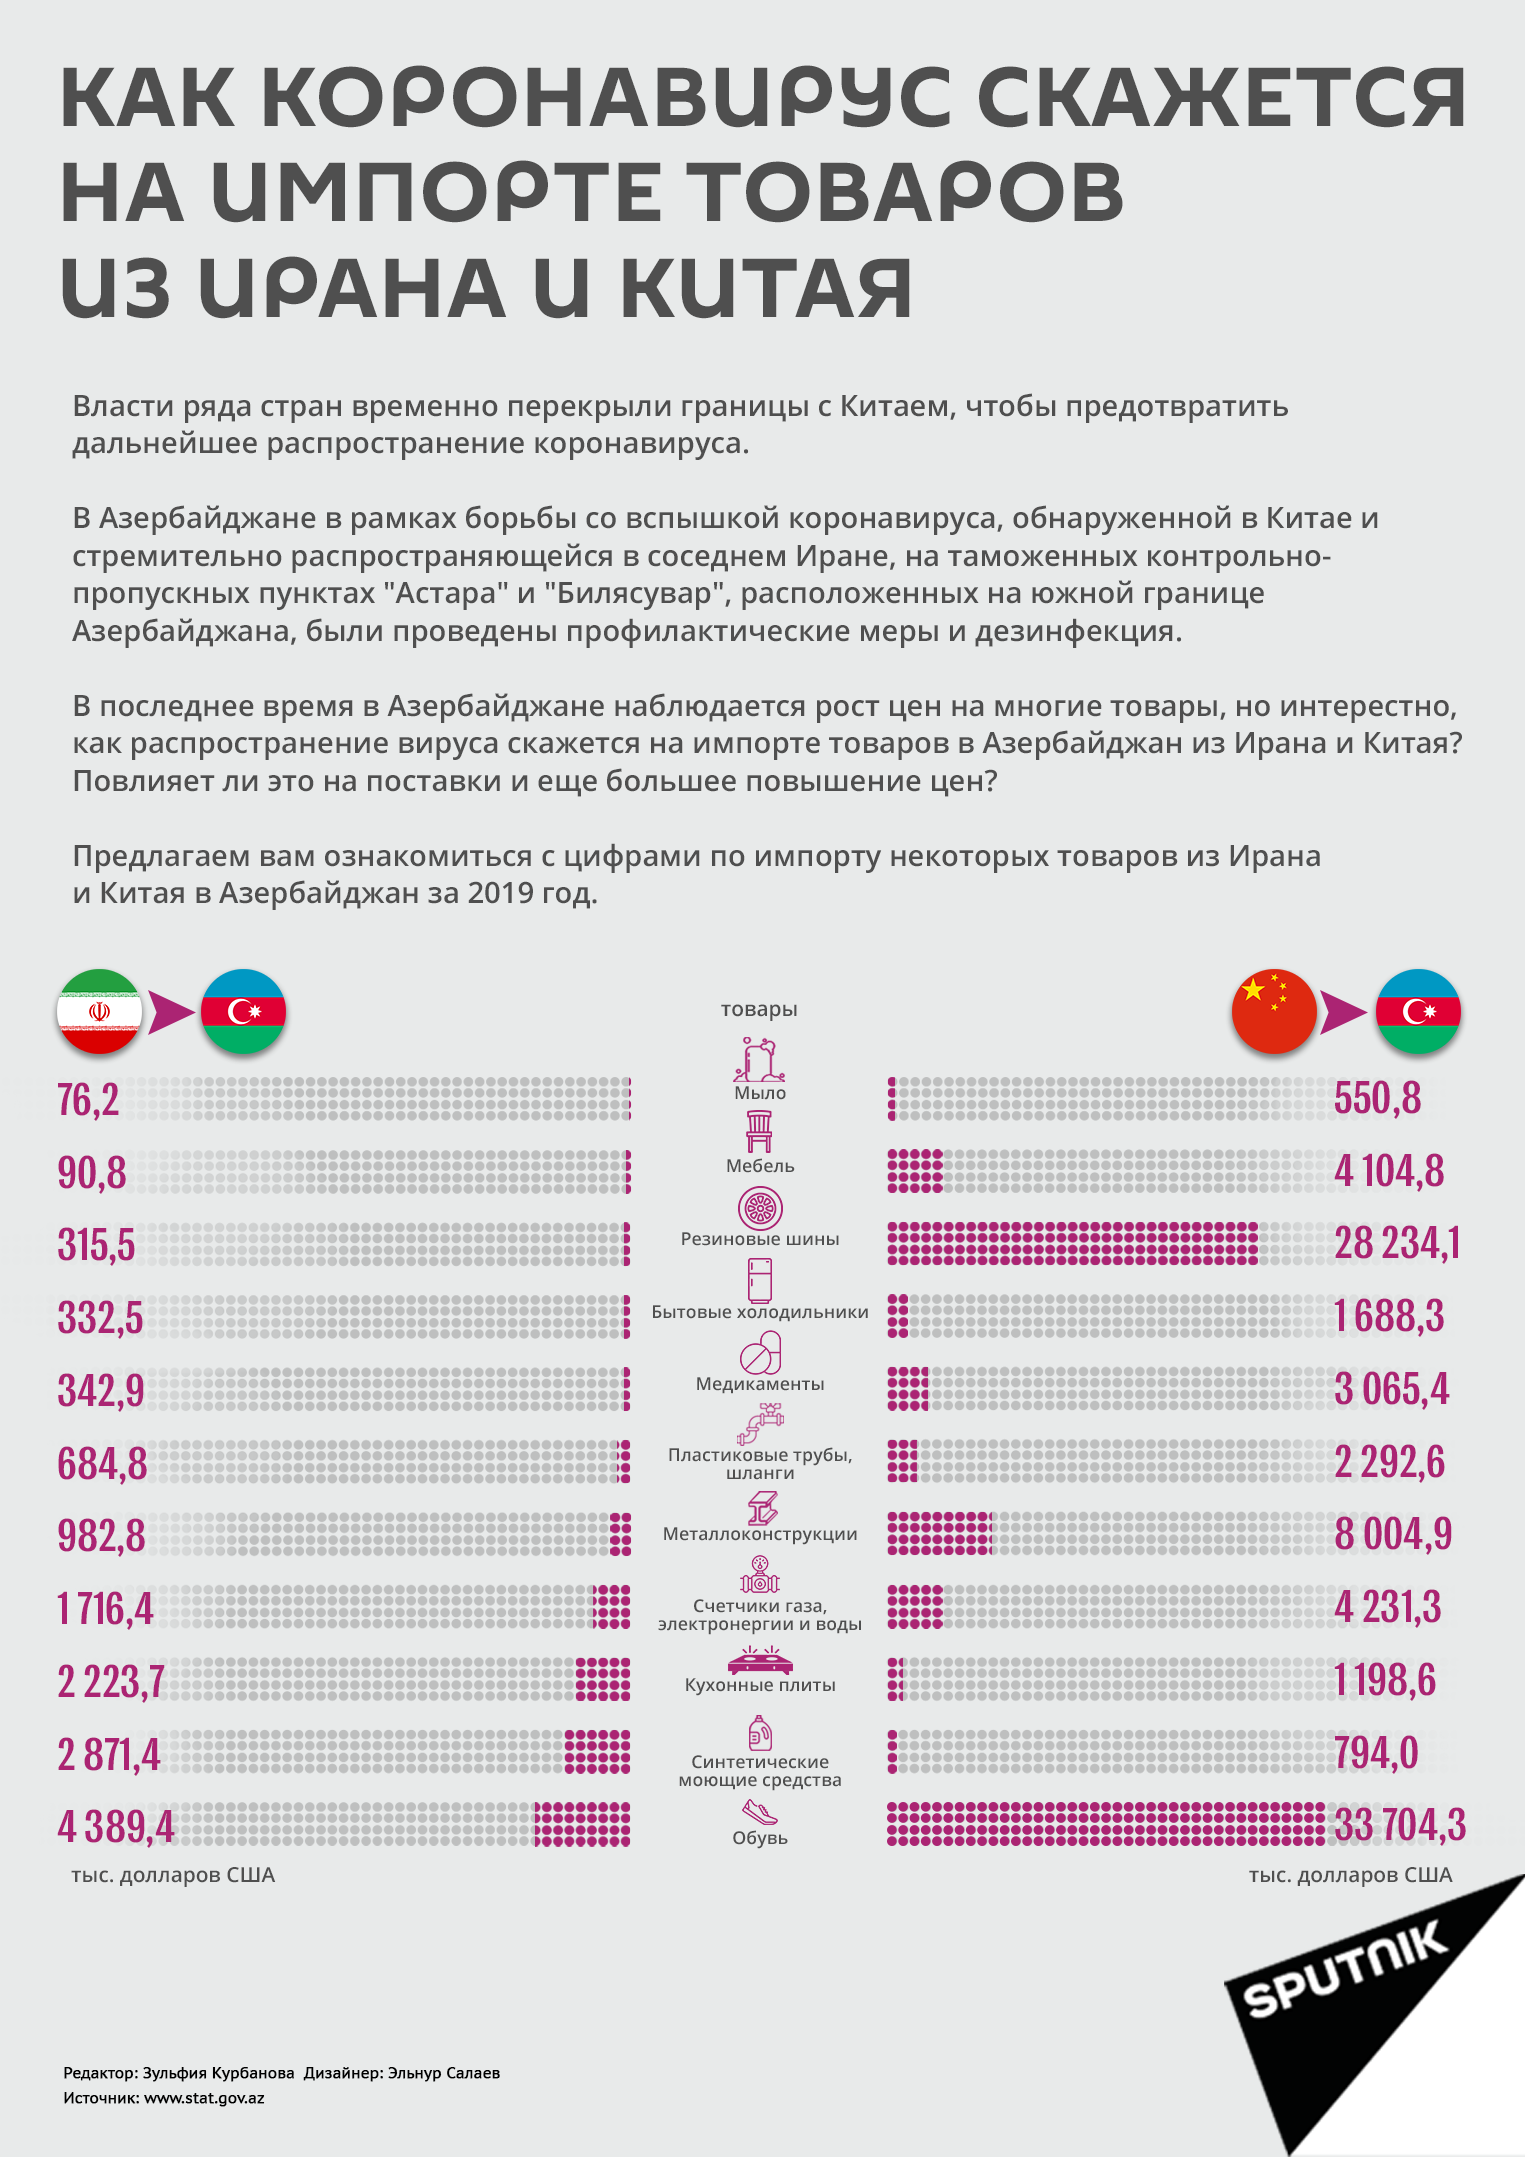 Инфографика: Как коронавирус скажется на импорте товаров из Ирана и Китая - Sputnik Азербайджан